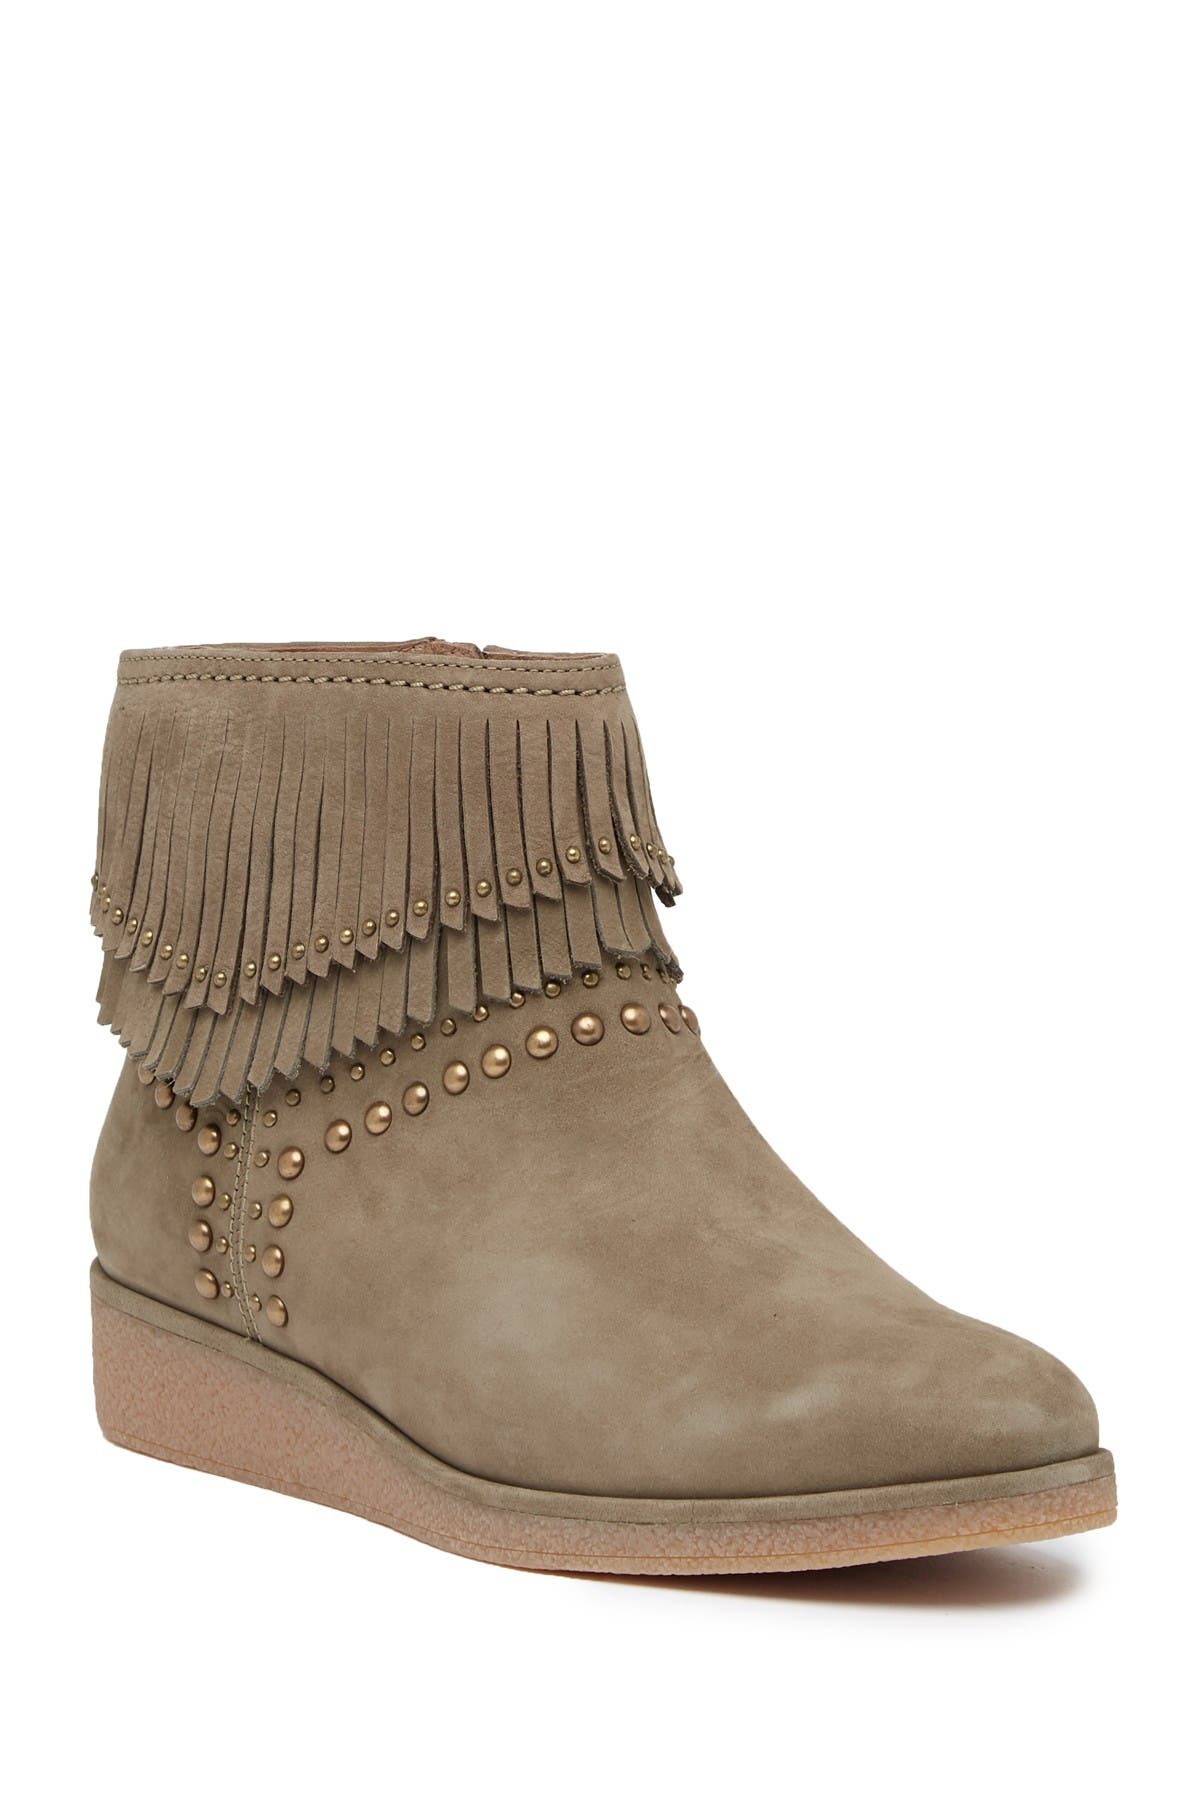 UGG | Adriana Wedge Fringe Leather Boot 